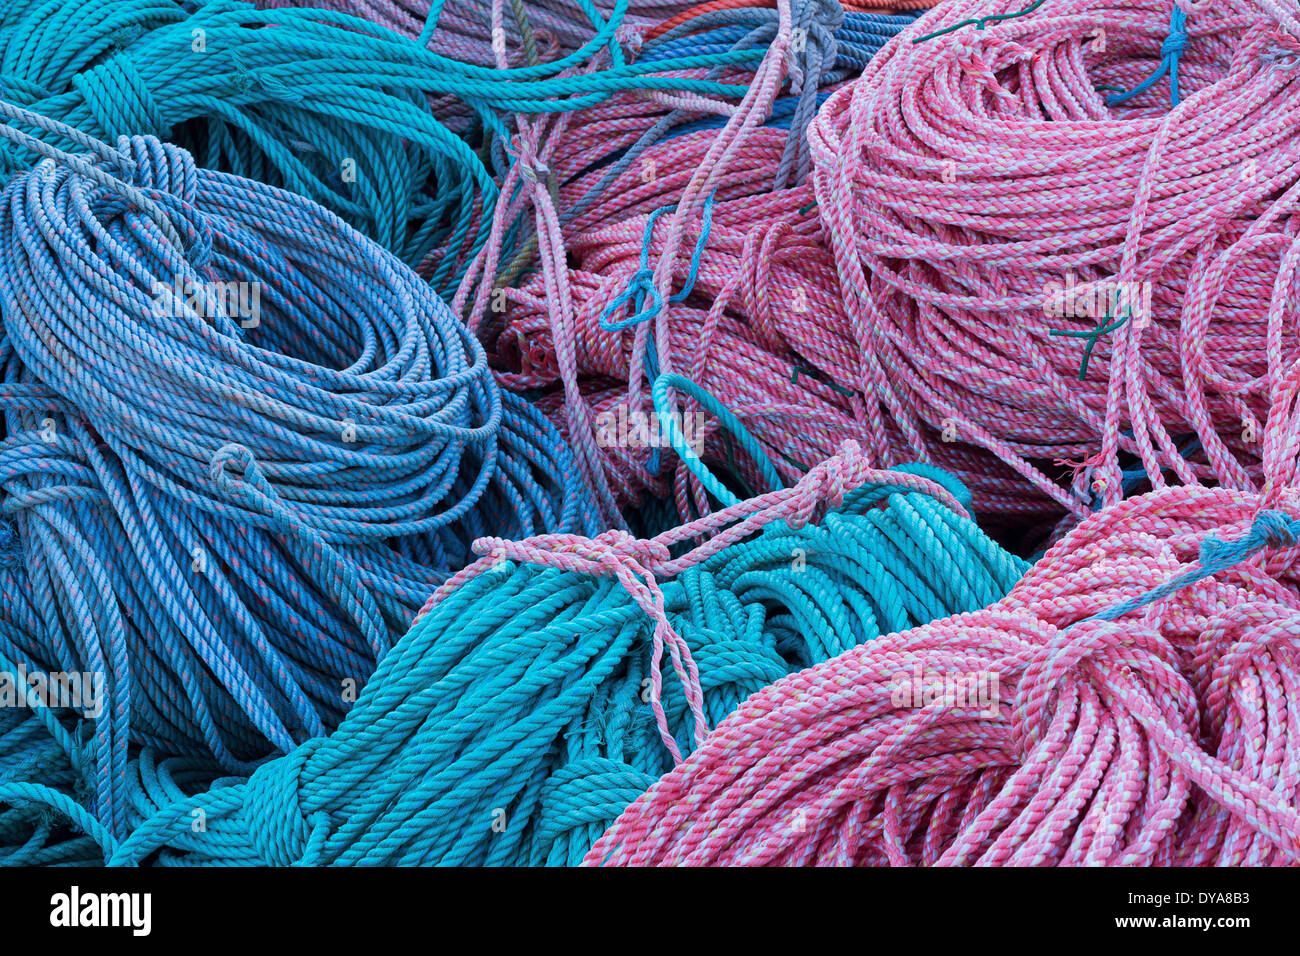 Bobine de corde couleur de motif coiled-coil DOCK HARBOUR HARBOUR crabe Pêche mer océan warf seaside Oregon USA ou l'Amérique, Banque D'Images